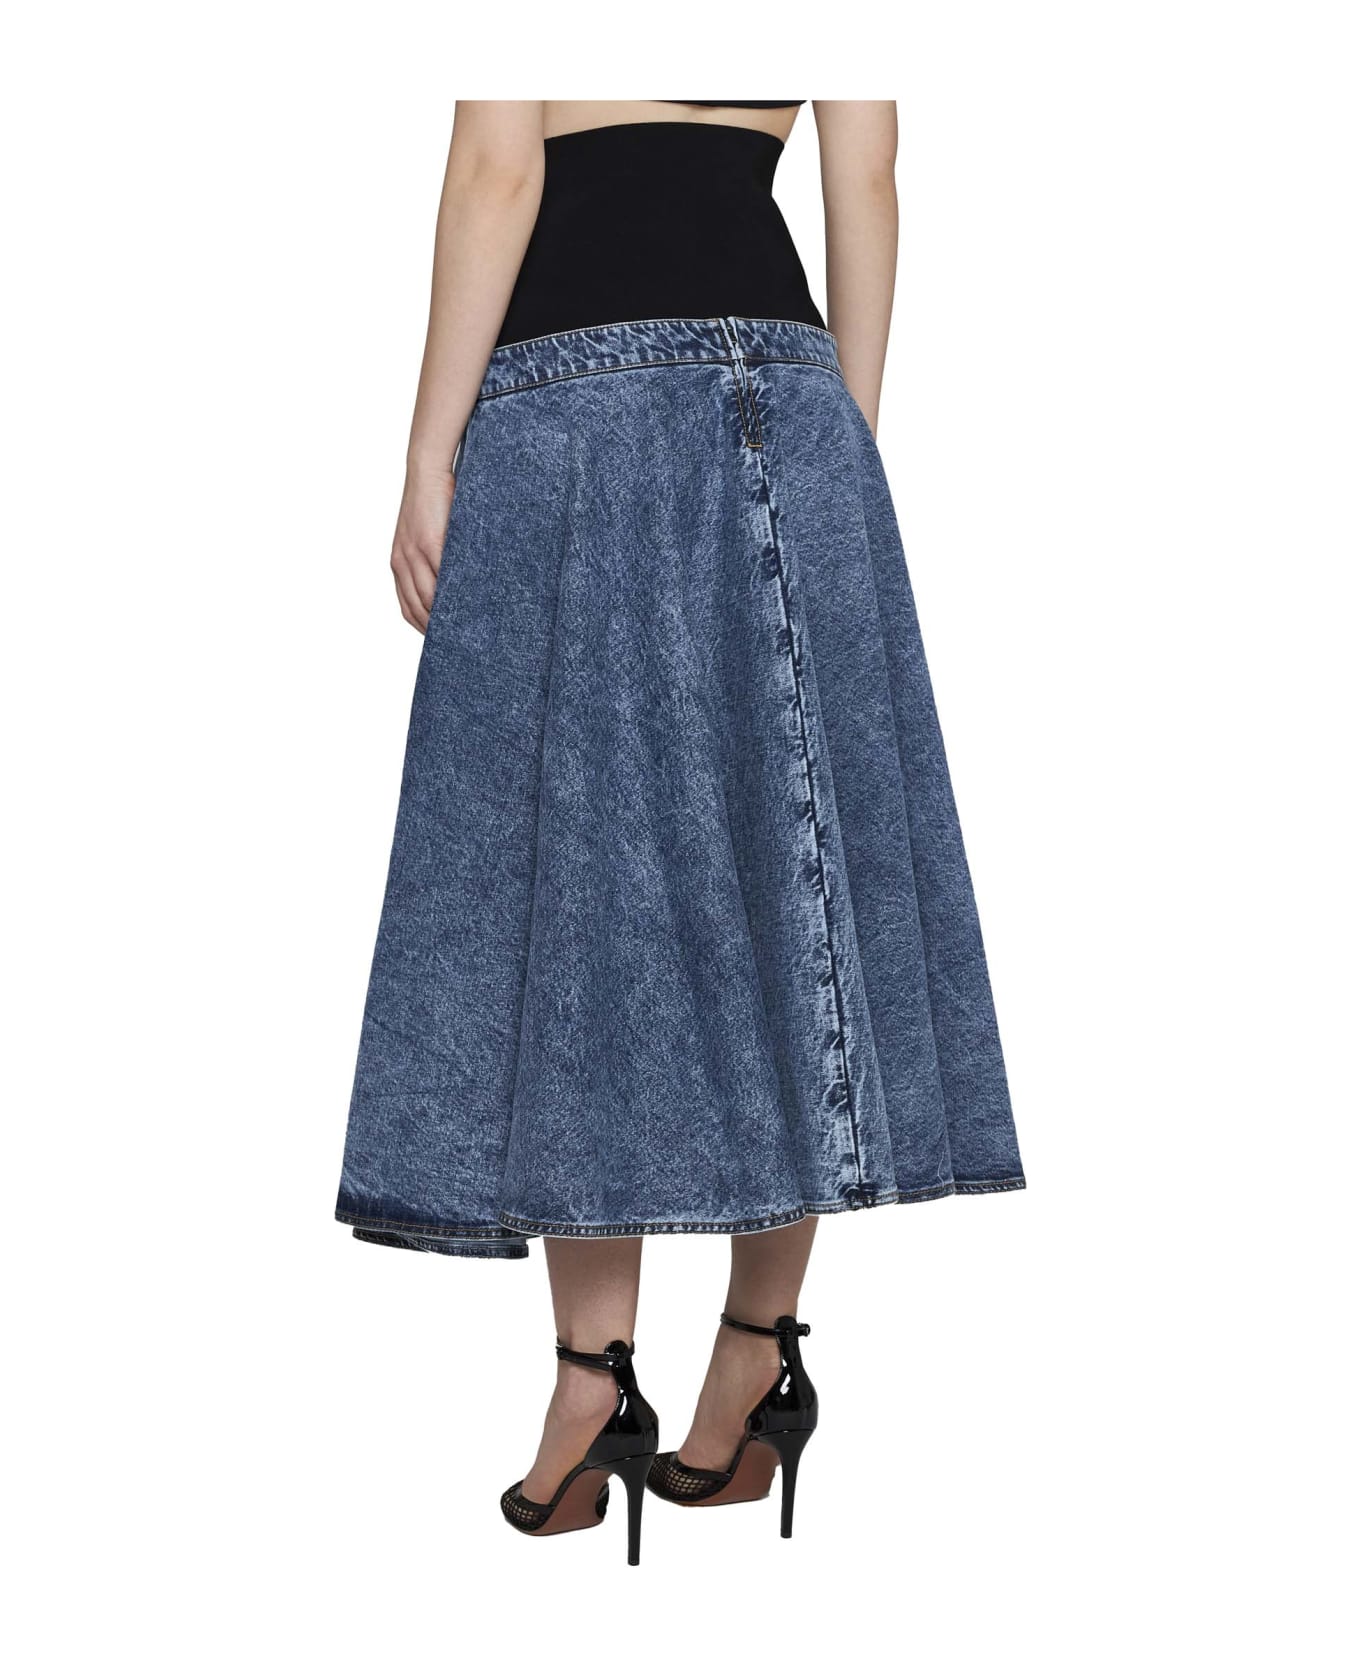 Alaia Skirt - Bleu neige スカート